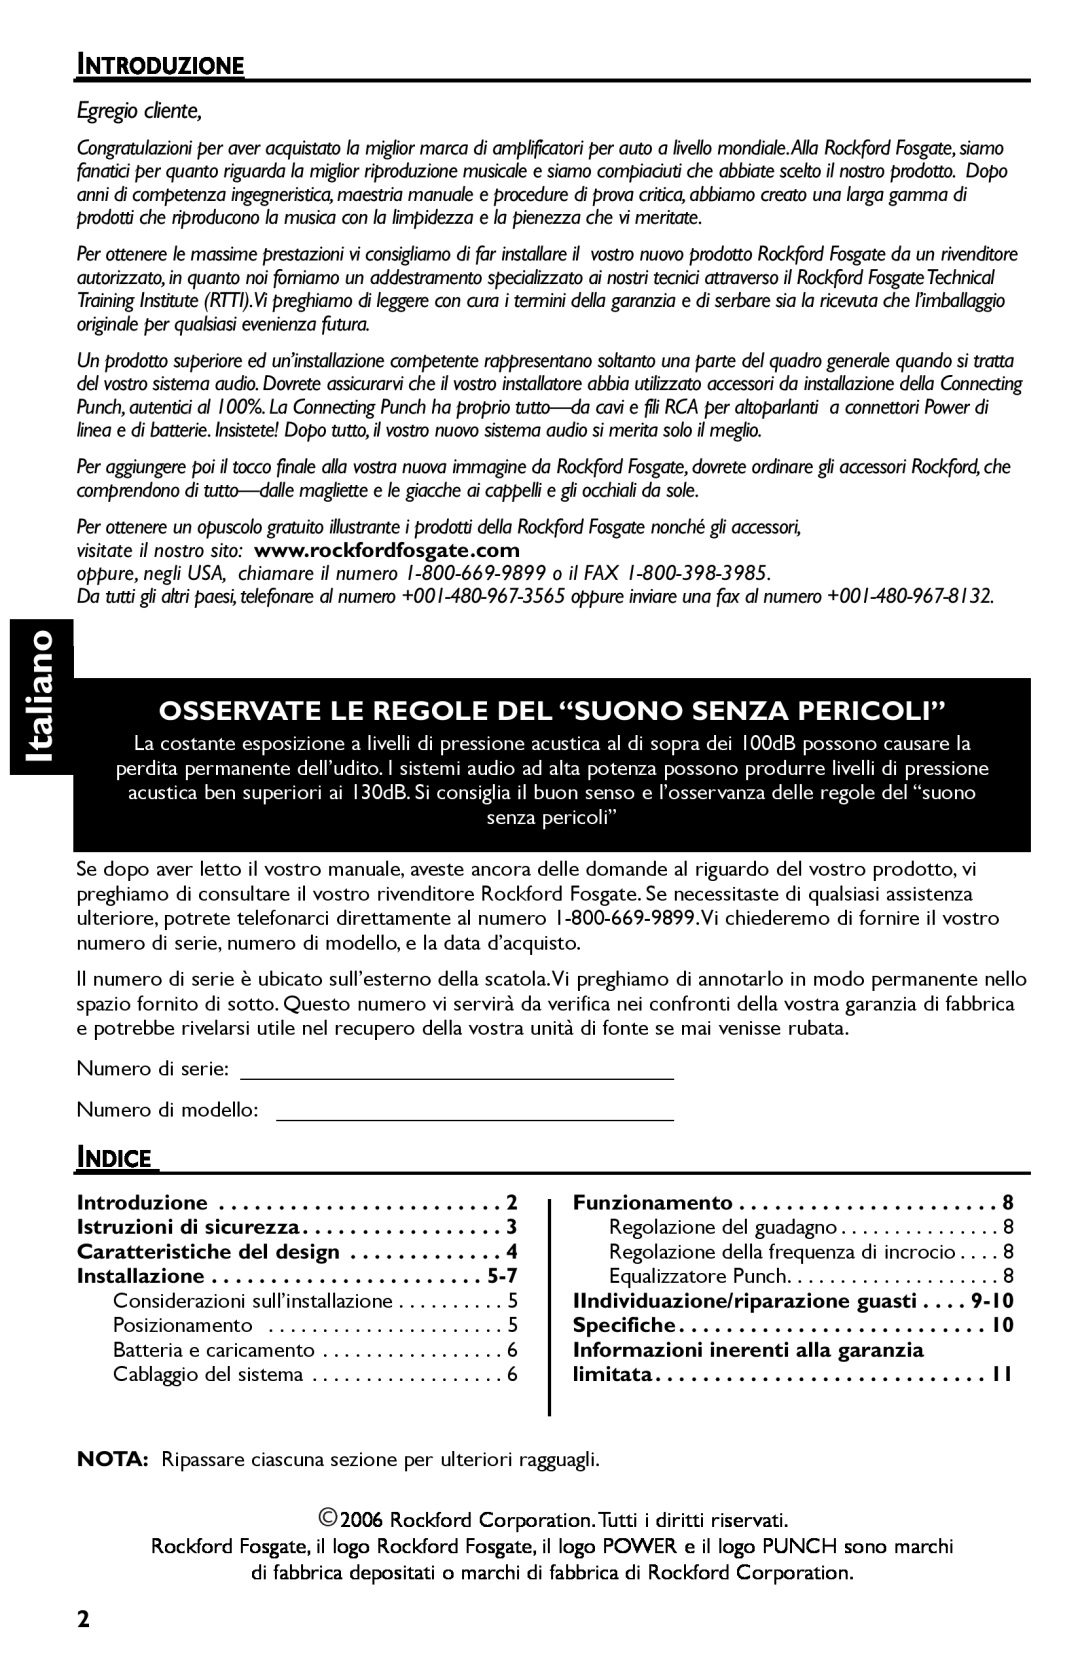 Rockford Fosgate R300-4 manual Italiano, Osservate Le Regole Del “Suono Senza Pericoli”, Egregio cliente 